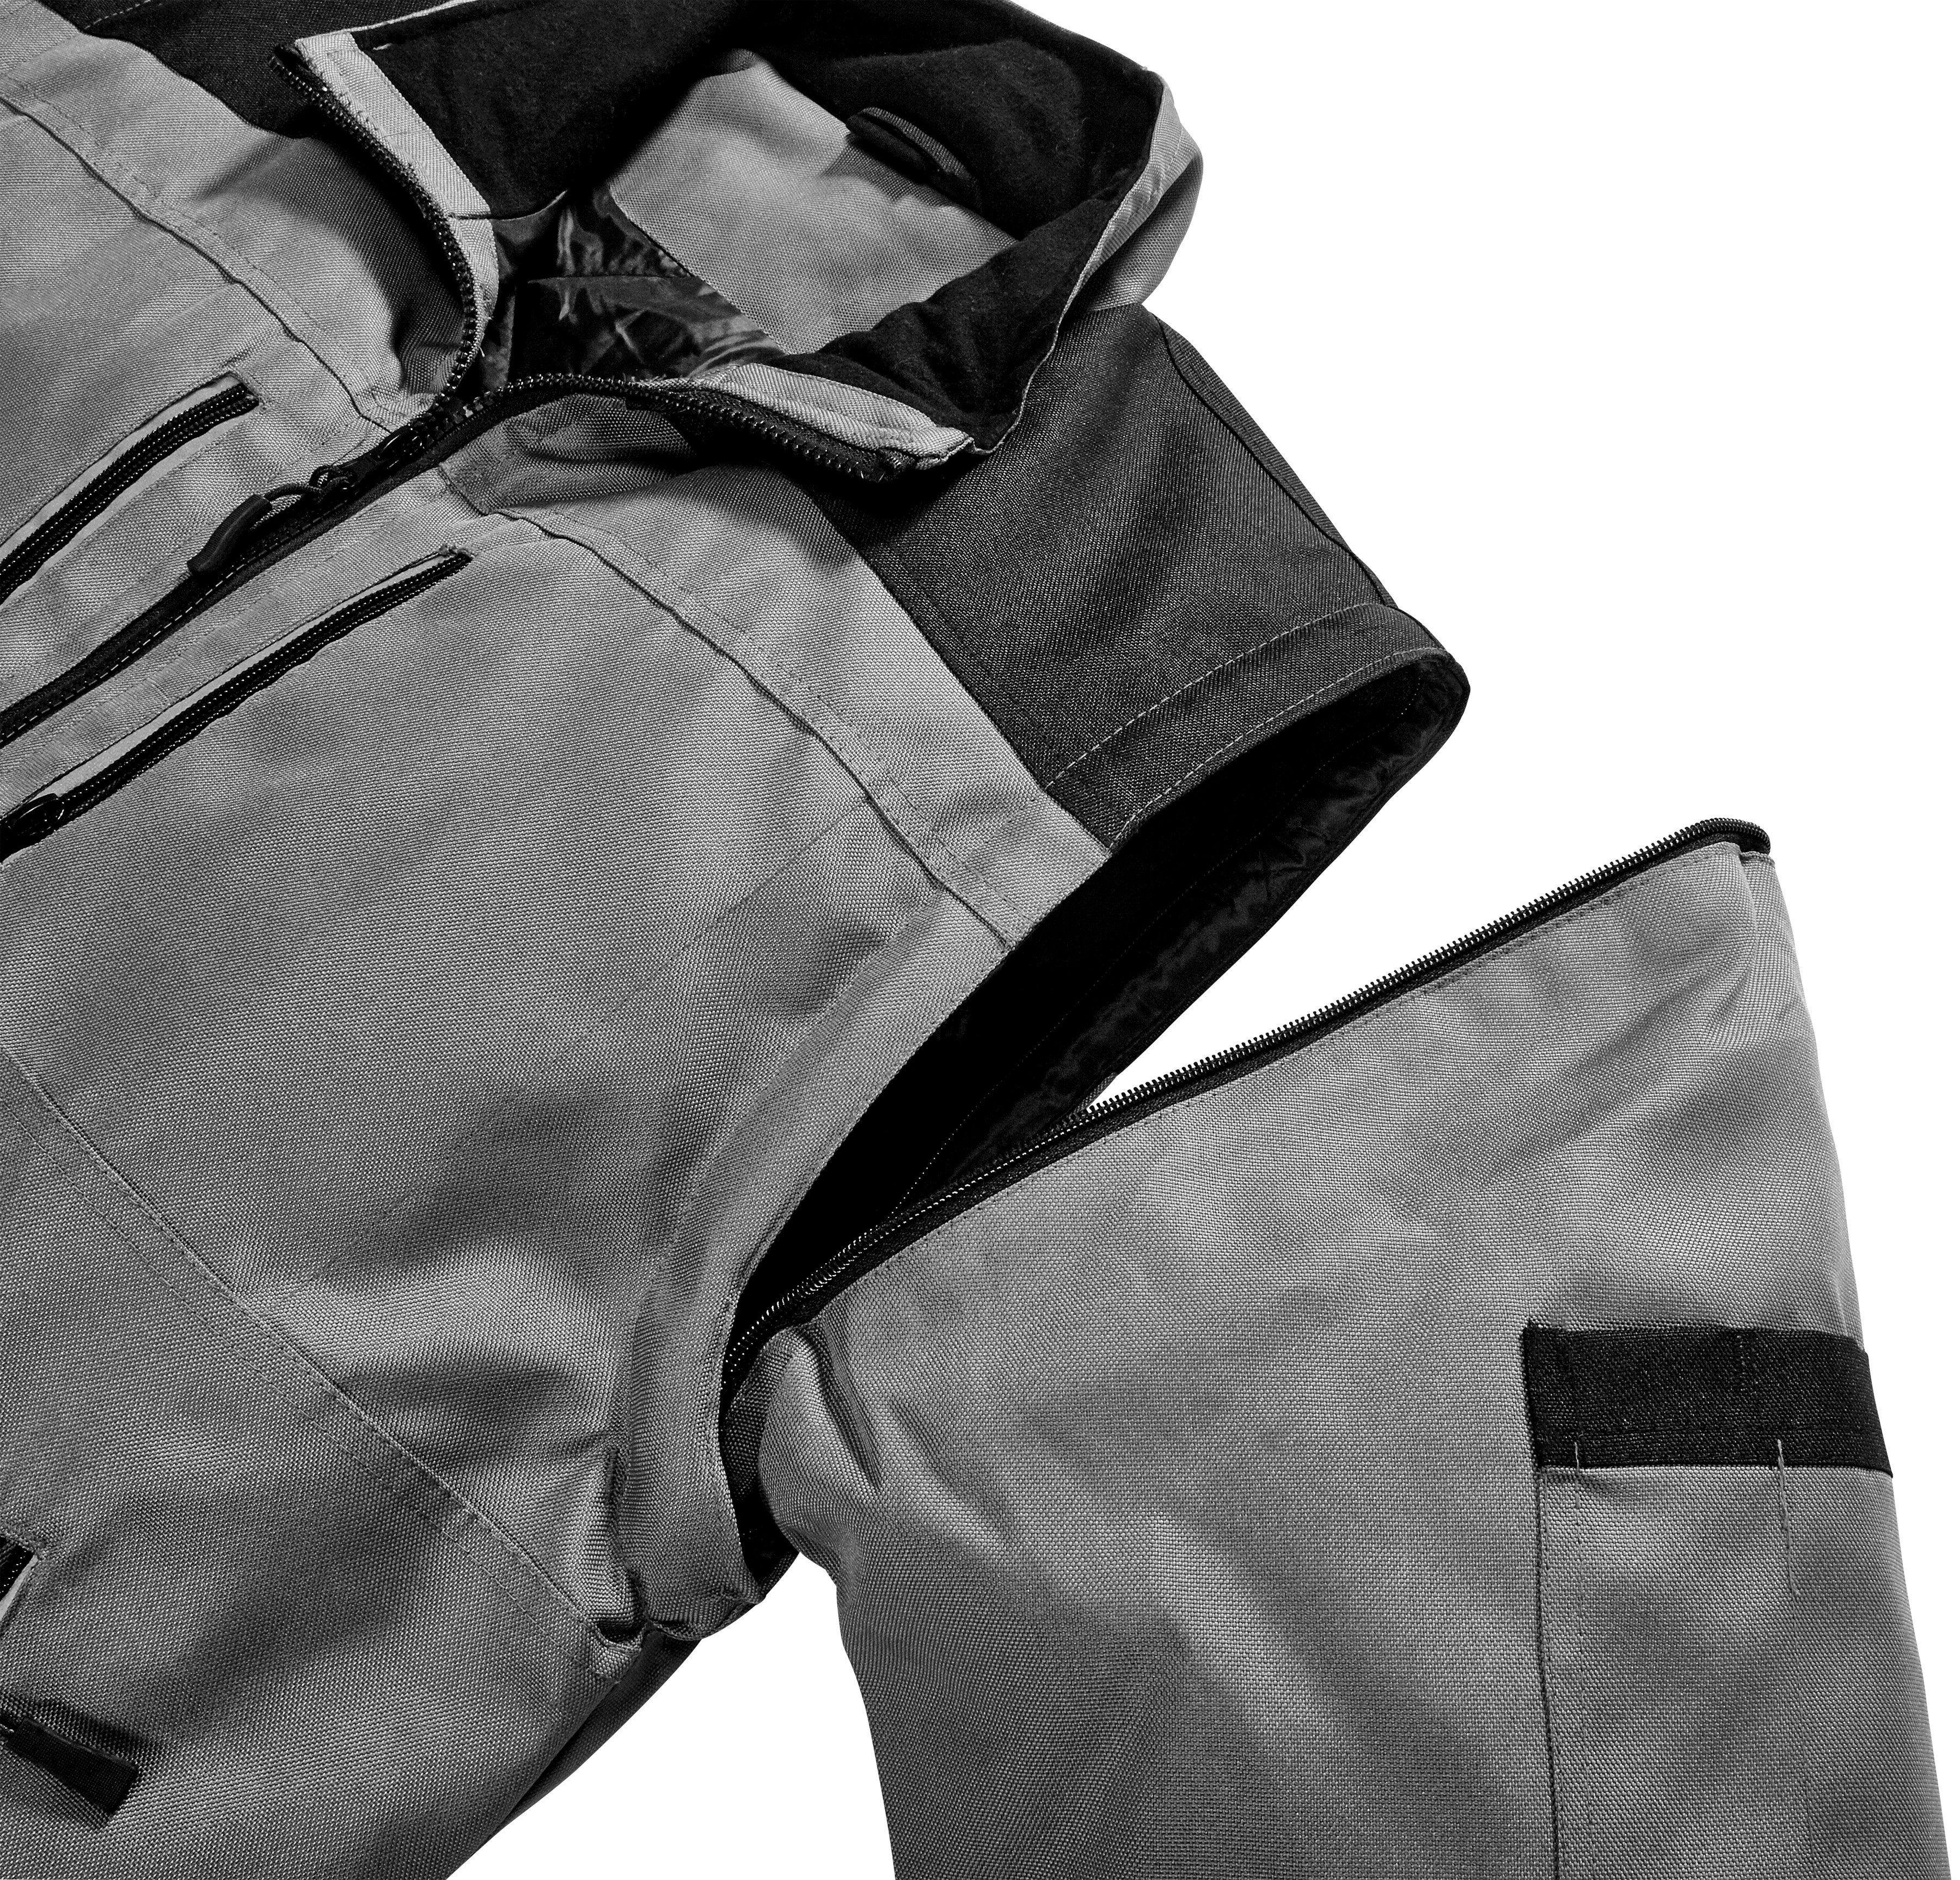 safety& more Arbeitsjacke Extreme grau-schwarz Reflexelemente